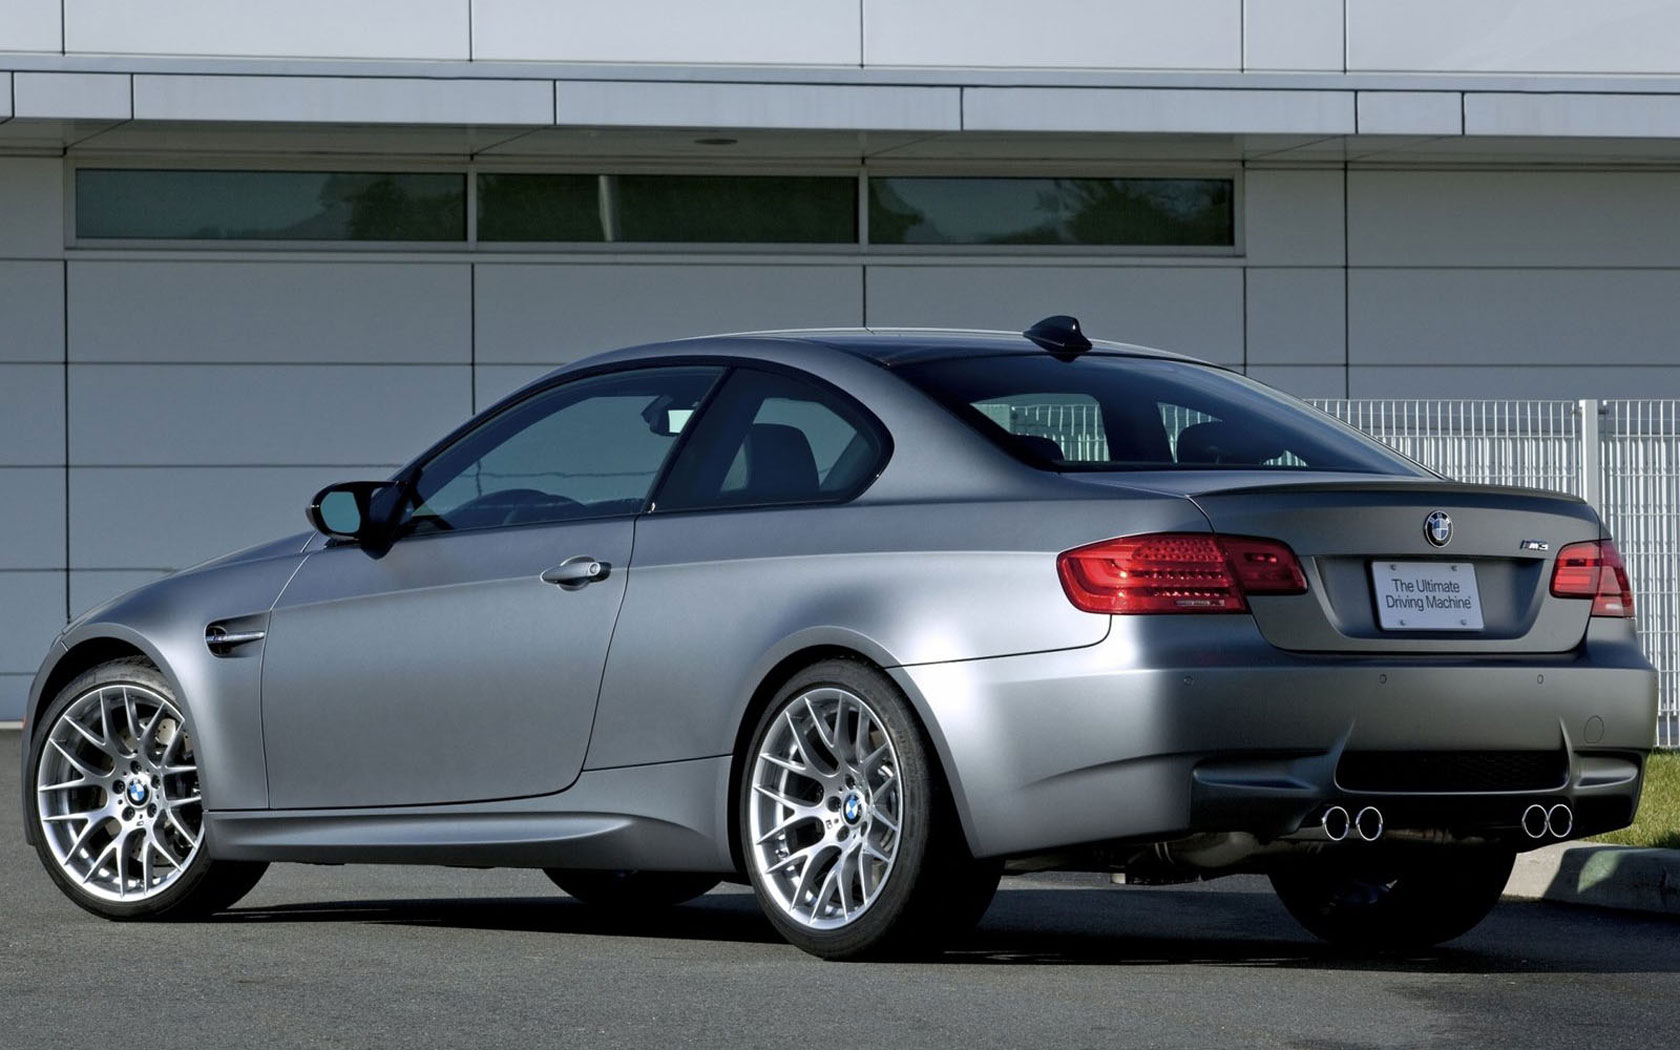  BMW M3 (2010-2012)